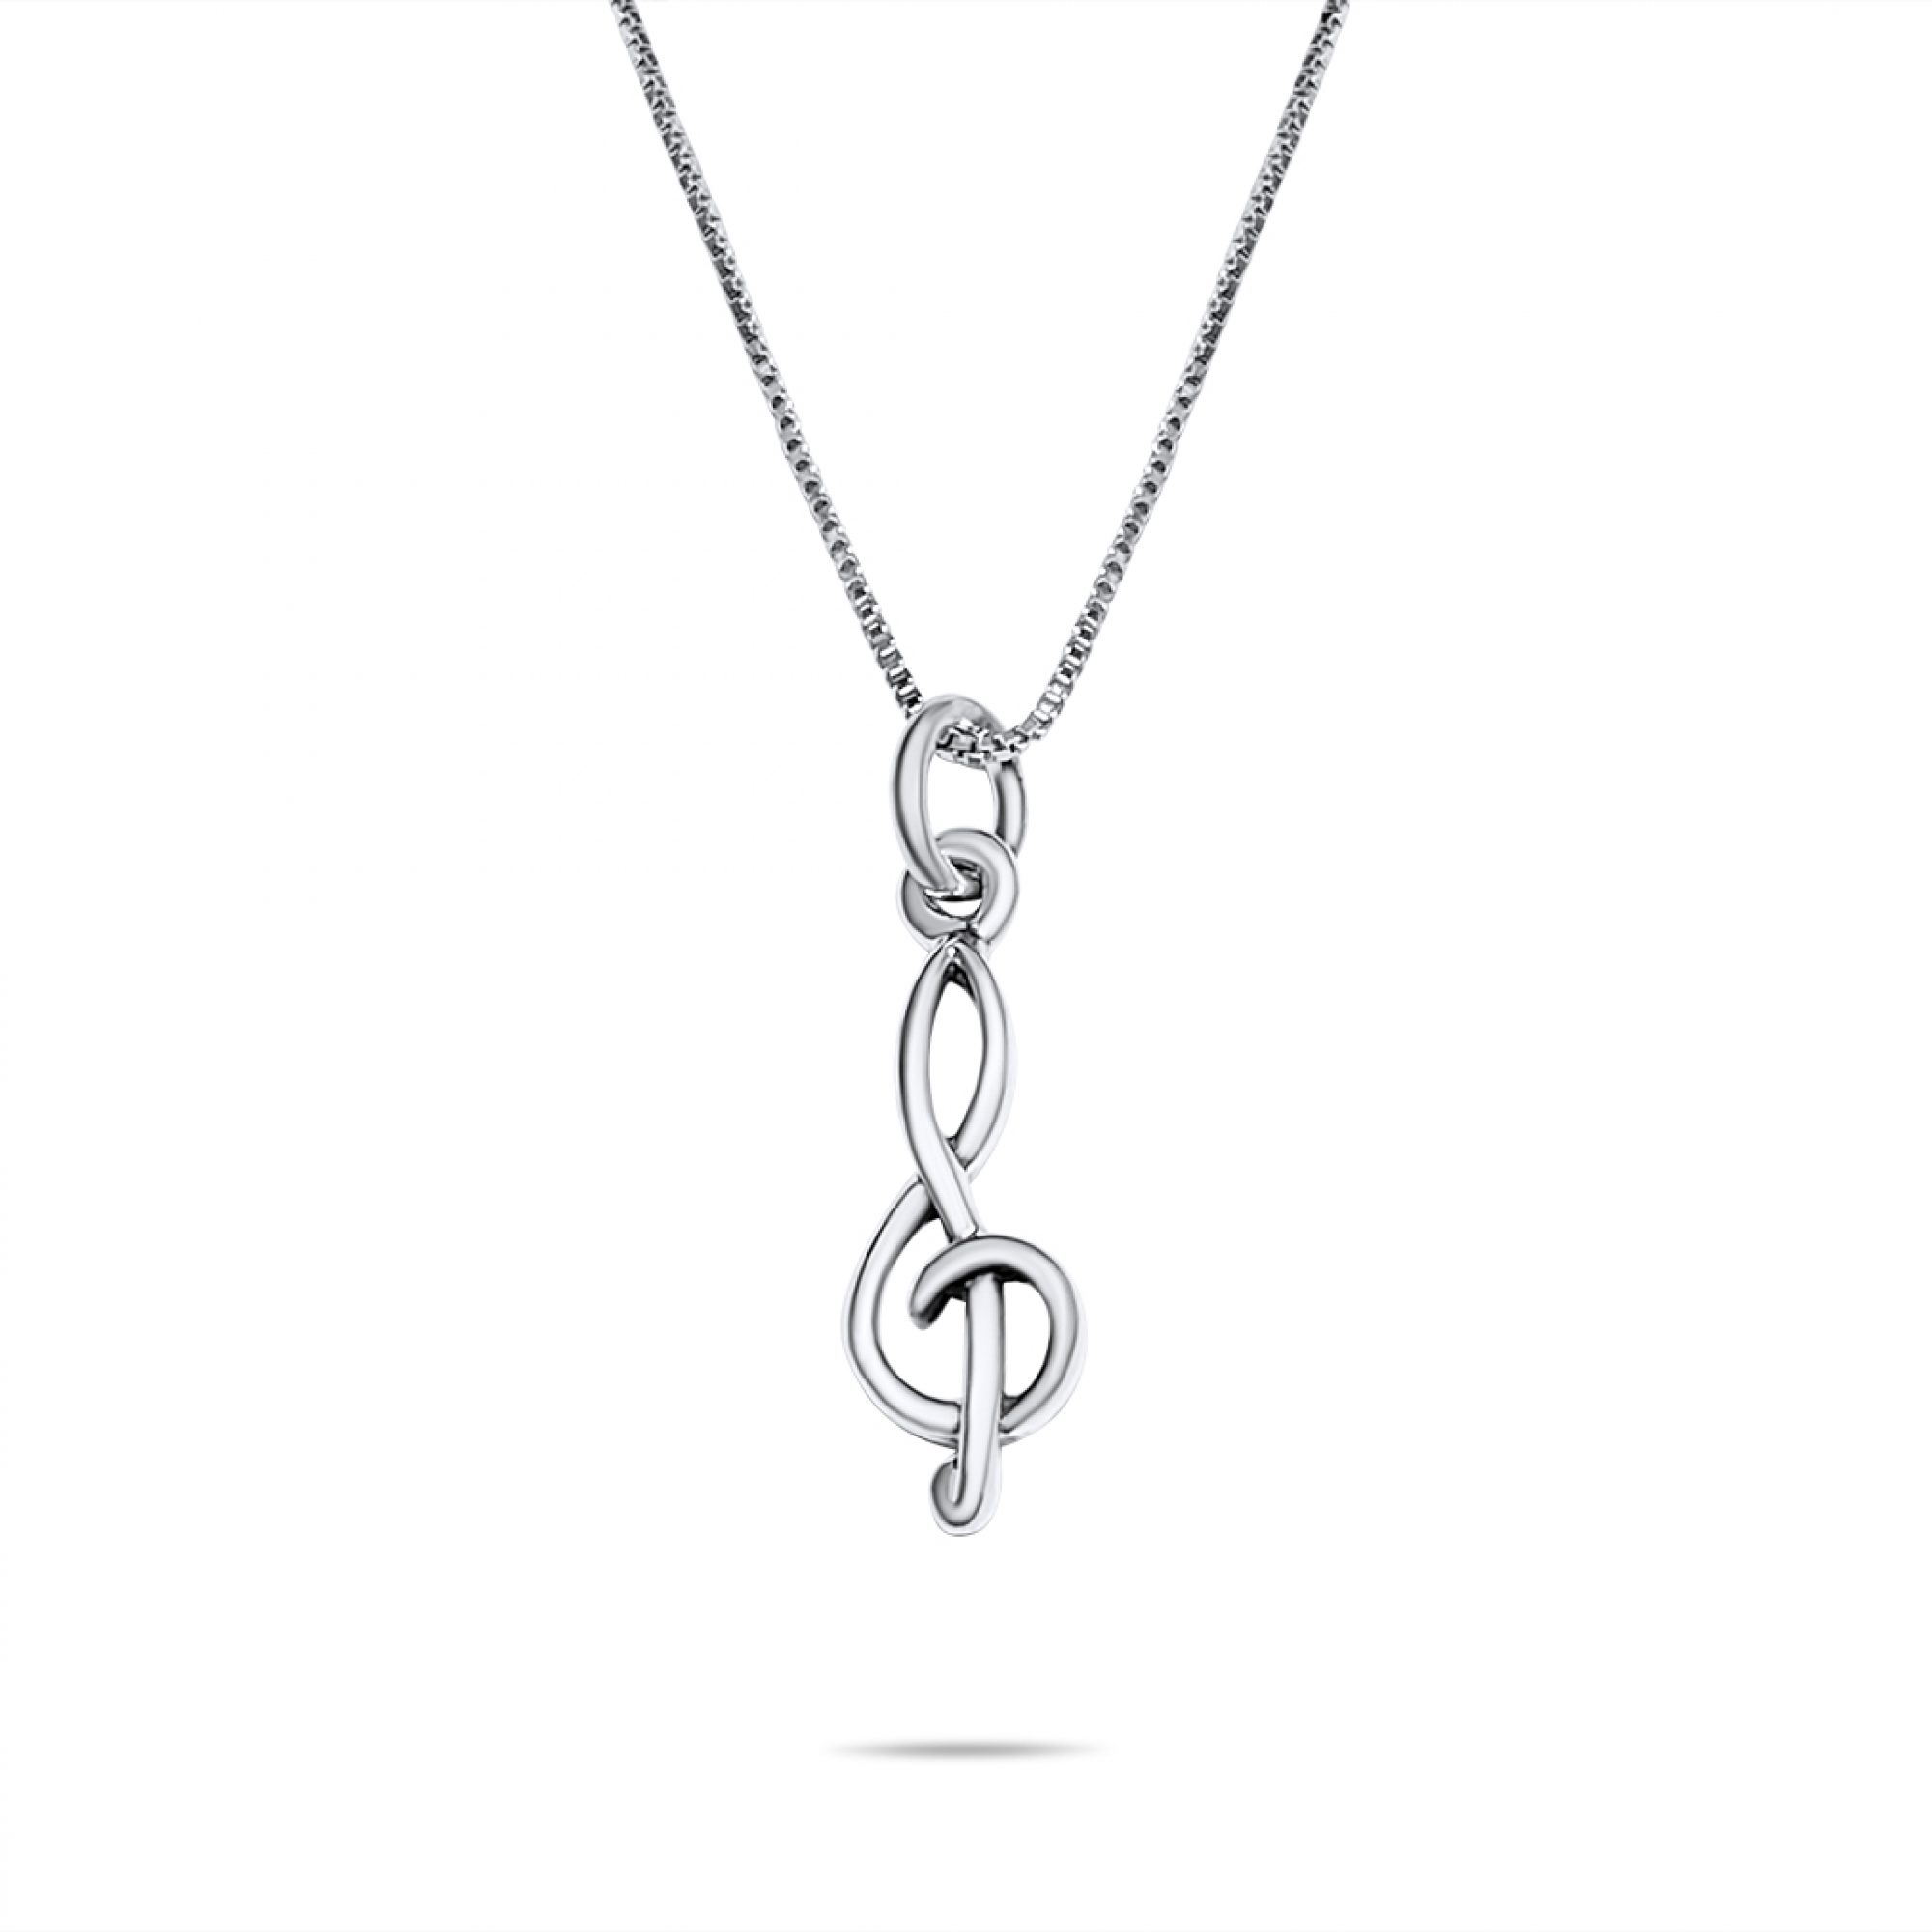 Treble clef necklace 